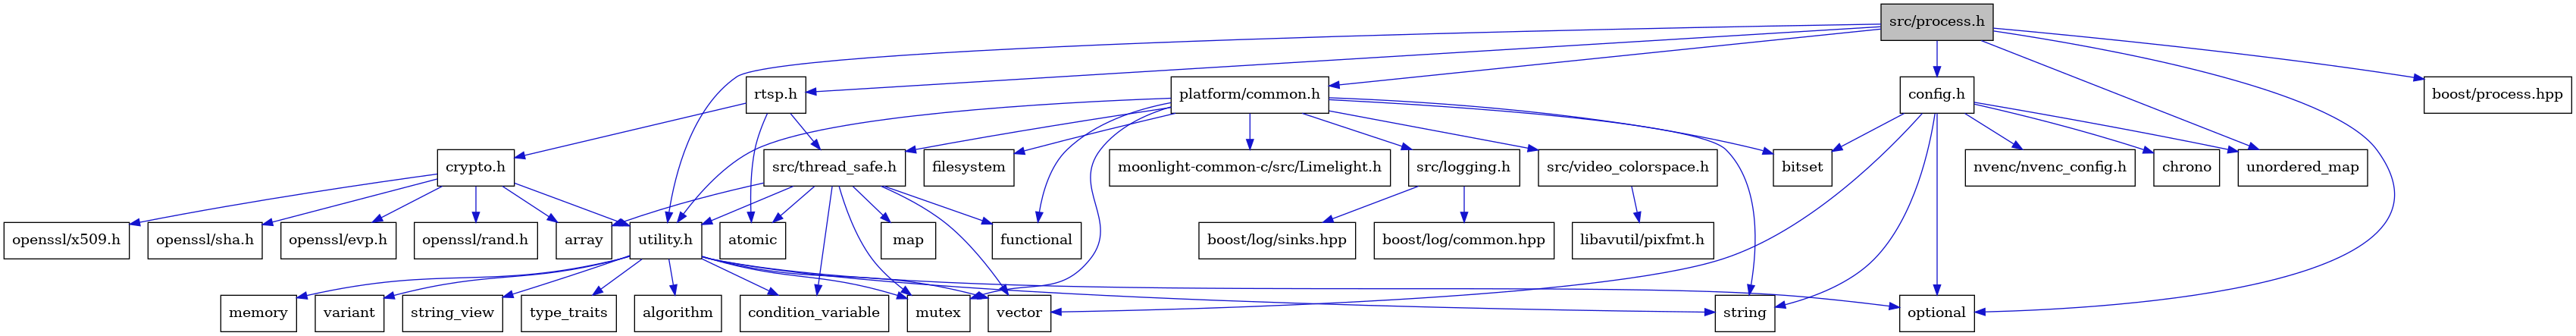 digraph {
    graph [bgcolor="#00000000"]
    node [shape=rectangle style=filled fillcolor="#FFFFFF" font=Helvetica padding=2]
    edge [color="#1414CE"]
    "1" [label="src/process.h" tooltip="src/process.h" fillcolor="#BFBFBF"]
    "20" [label="atomic" tooltip="atomic"]
    "15" [label="src/logging.h" tooltip="src/logging.h"]
    "13" [label="functional" tooltip="functional"]
    "17" [label="boost/log/sinks.hpp" tooltip="boost/log/sinks.hpp"]
    "35" [label="openssl/rand.h" tooltip="openssl/rand.h"]
    "12" [label="filesystem" tooltip="filesystem"]
    "28" [label="variant" tooltip="variant"]
    "37" [label="openssl/x509.h" tooltip="openssl/x509.h"]
    "36" [label="openssl/sha.h" tooltip="openssl/sha.h"]
    "5" [label="config.h" tooltip="config.h"]
    "8" [label="string" tooltip="string"]
    "33" [label="crypto.h" tooltip="crypto.h"]
    "22" [label="map" tooltip="map"]
    "10" [label="nvenc/nvenc_config.h" tooltip="nvenc/nvenc_config.h"]
    "18" [label="src/thread_safe.h" tooltip="src/thread_safe.h"]
    "26" [label="string_view" tooltip="string_view"]
    "21" [label="condition_variable" tooltip="condition_variable"]
    "23" [label="utility.h" tooltip="utility.h"]
    "6" [label="bitset" tooltip="bitset"]
    "30" [label="libavutil/pixfmt.h" tooltip="libavutil/pixfmt.h"]
    "2" [label="optional" tooltip="optional"]
    "29" [label="src/video_colorspace.h" tooltip="src/video_colorspace.h"]
    "9" [label="vector" tooltip="vector"]
    "19" [label="array" tooltip="array"]
    "4" [label="boost/process.hpp" tooltip="boost/process.hpp"]
    "11" [label="platform/common.h" tooltip="platform/common.h"]
    "34" [label="openssl/evp.h" tooltip="openssl/evp.h"]
    "3" [label="unordered_map" tooltip="unordered_map"]
    "14" [label="mutex" tooltip="mutex"]
    "7" [label="chrono" tooltip="chrono"]
    "27" [label="type_traits" tooltip="type_traits"]
    "31" [label="moonlight-common-c/src/Limelight.h" tooltip="moonlight-common-c/src/Limelight.h"]
    "16" [label="boost/log/common.hpp" tooltip="boost/log/common.hpp"]
    "24" [label="algorithm" tooltip="algorithm"]
    "32" [label="rtsp.h" tooltip="rtsp.h"]
    "25" [label="memory" tooltip="memory"]
    "1" -> "2" [dir=forward tooltip="include"]
    "1" -> "3" [dir=forward tooltip="include"]
    "1" -> "4" [dir=forward tooltip="include"]
    "1" -> "5" [dir=forward tooltip="include"]
    "1" -> "11" [dir=forward tooltip="include"]
    "1" -> "32" [dir=forward tooltip="include"]
    "1" -> "23" [dir=forward tooltip="include"]
    "15" -> "16" [dir=forward tooltip="include"]
    "15" -> "17" [dir=forward tooltip="include"]
    "5" -> "6" [dir=forward tooltip="include"]
    "5" -> "7" [dir=forward tooltip="include"]
    "5" -> "2" [dir=forward tooltip="include"]
    "5" -> "8" [dir=forward tooltip="include"]
    "5" -> "3" [dir=forward tooltip="include"]
    "5" -> "9" [dir=forward tooltip="include"]
    "5" -> "10" [dir=forward tooltip="include"]
    "33" -> "19" [dir=forward tooltip="include"]
    "33" -> "34" [dir=forward tooltip="include"]
    "33" -> "35" [dir=forward tooltip="include"]
    "33" -> "36" [dir=forward tooltip="include"]
    "33" -> "37" [dir=forward tooltip="include"]
    "33" -> "23" [dir=forward tooltip="include"]
    "18" -> "19" [dir=forward tooltip="include"]
    "18" -> "20" [dir=forward tooltip="include"]
    "18" -> "21" [dir=forward tooltip="include"]
    "18" -> "13" [dir=forward tooltip="include"]
    "18" -> "22" [dir=forward tooltip="include"]
    "18" -> "14" [dir=forward tooltip="include"]
    "18" -> "9" [dir=forward tooltip="include"]
    "18" -> "23" [dir=forward tooltip="include"]
    "23" -> "24" [dir=forward tooltip="include"]
    "23" -> "21" [dir=forward tooltip="include"]
    "23" -> "25" [dir=forward tooltip="include"]
    "23" -> "14" [dir=forward tooltip="include"]
    "23" -> "2" [dir=forward tooltip="include"]
    "23" -> "8" [dir=forward tooltip="include"]
    "23" -> "26" [dir=forward tooltip="include"]
    "23" -> "27" [dir=forward tooltip="include"]
    "23" -> "28" [dir=forward tooltip="include"]
    "23" -> "9" [dir=forward tooltip="include"]
    "29" -> "30" [dir=forward tooltip="include"]
    "11" -> "6" [dir=forward tooltip="include"]
    "11" -> "12" [dir=forward tooltip="include"]
    "11" -> "13" [dir=forward tooltip="include"]
    "11" -> "14" [dir=forward tooltip="include"]
    "11" -> "8" [dir=forward tooltip="include"]
    "11" -> "15" [dir=forward tooltip="include"]
    "11" -> "18" [dir=forward tooltip="include"]
    "11" -> "23" [dir=forward tooltip="include"]
    "11" -> "29" [dir=forward tooltip="include"]
    "11" -> "31" [dir=forward tooltip="include"]
    "32" -> "20" [dir=forward tooltip="include"]
    "32" -> "33" [dir=forward tooltip="include"]
    "32" -> "18" [dir=forward tooltip="include"]
}